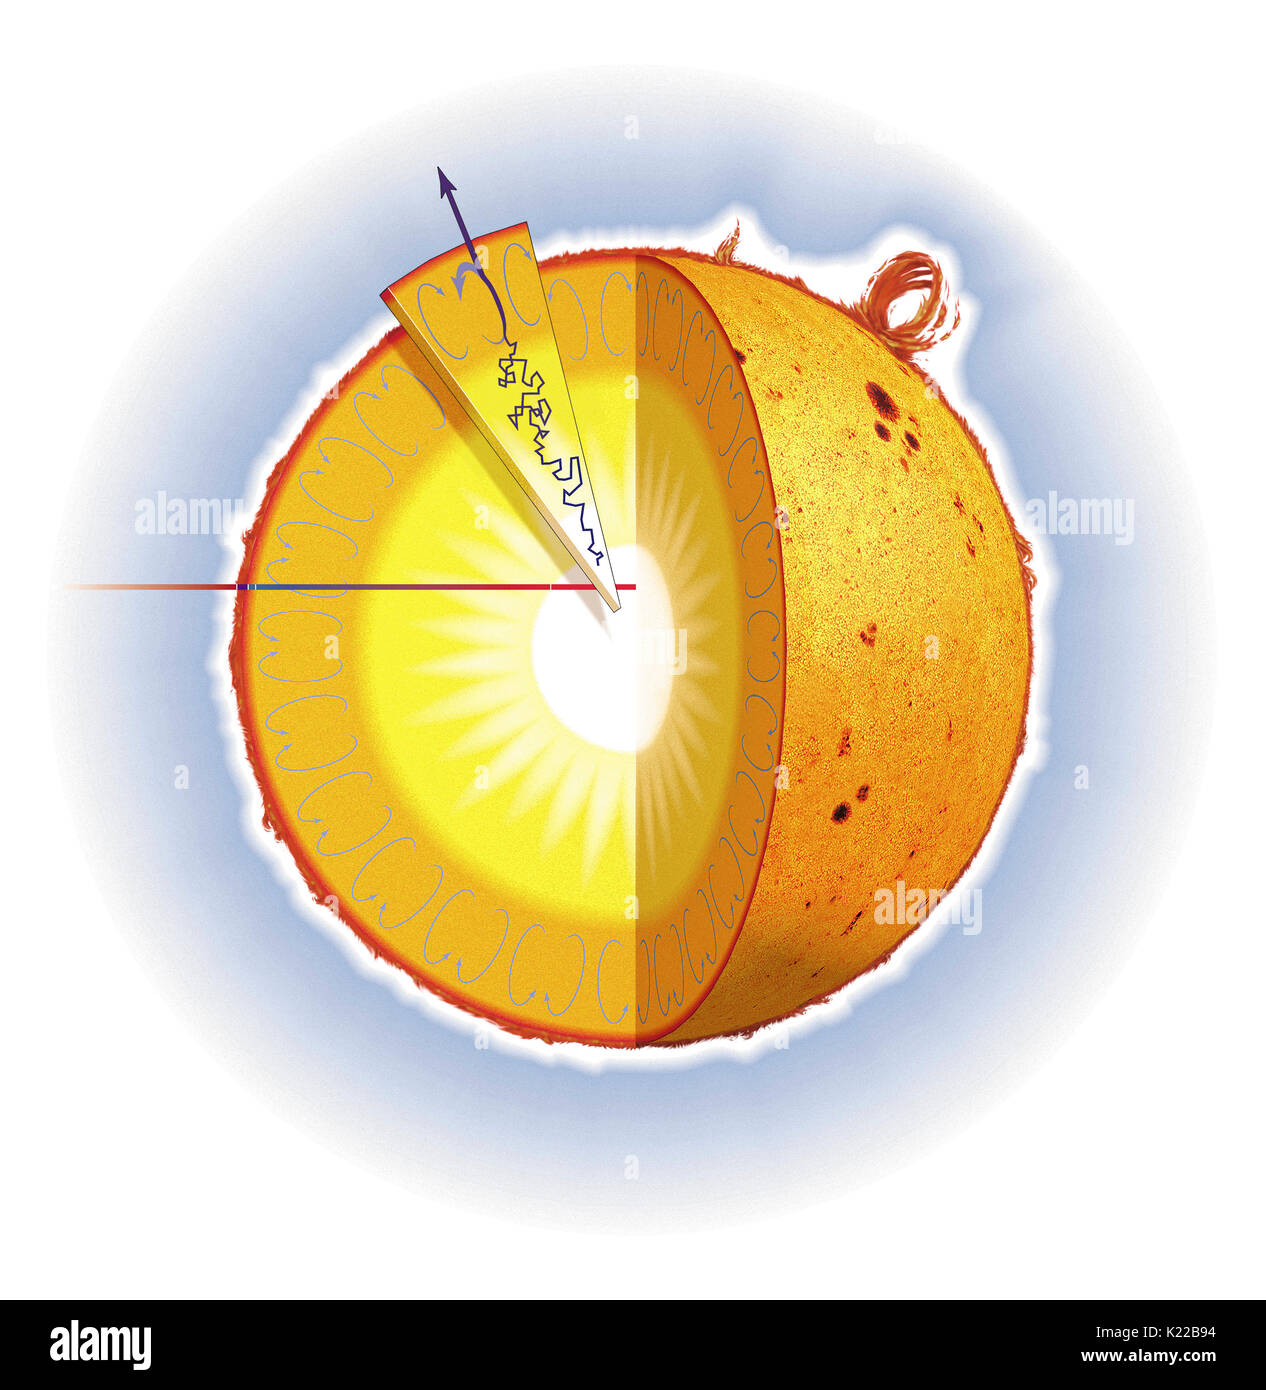 Energia solare è prodotta al centro della stella, nel suo nucleo, dove la temperatura raggiunge 15.000.000 ̊C e dove idrogeno è convertito in elio per mezzo della fusione nucleare. Foto Stock